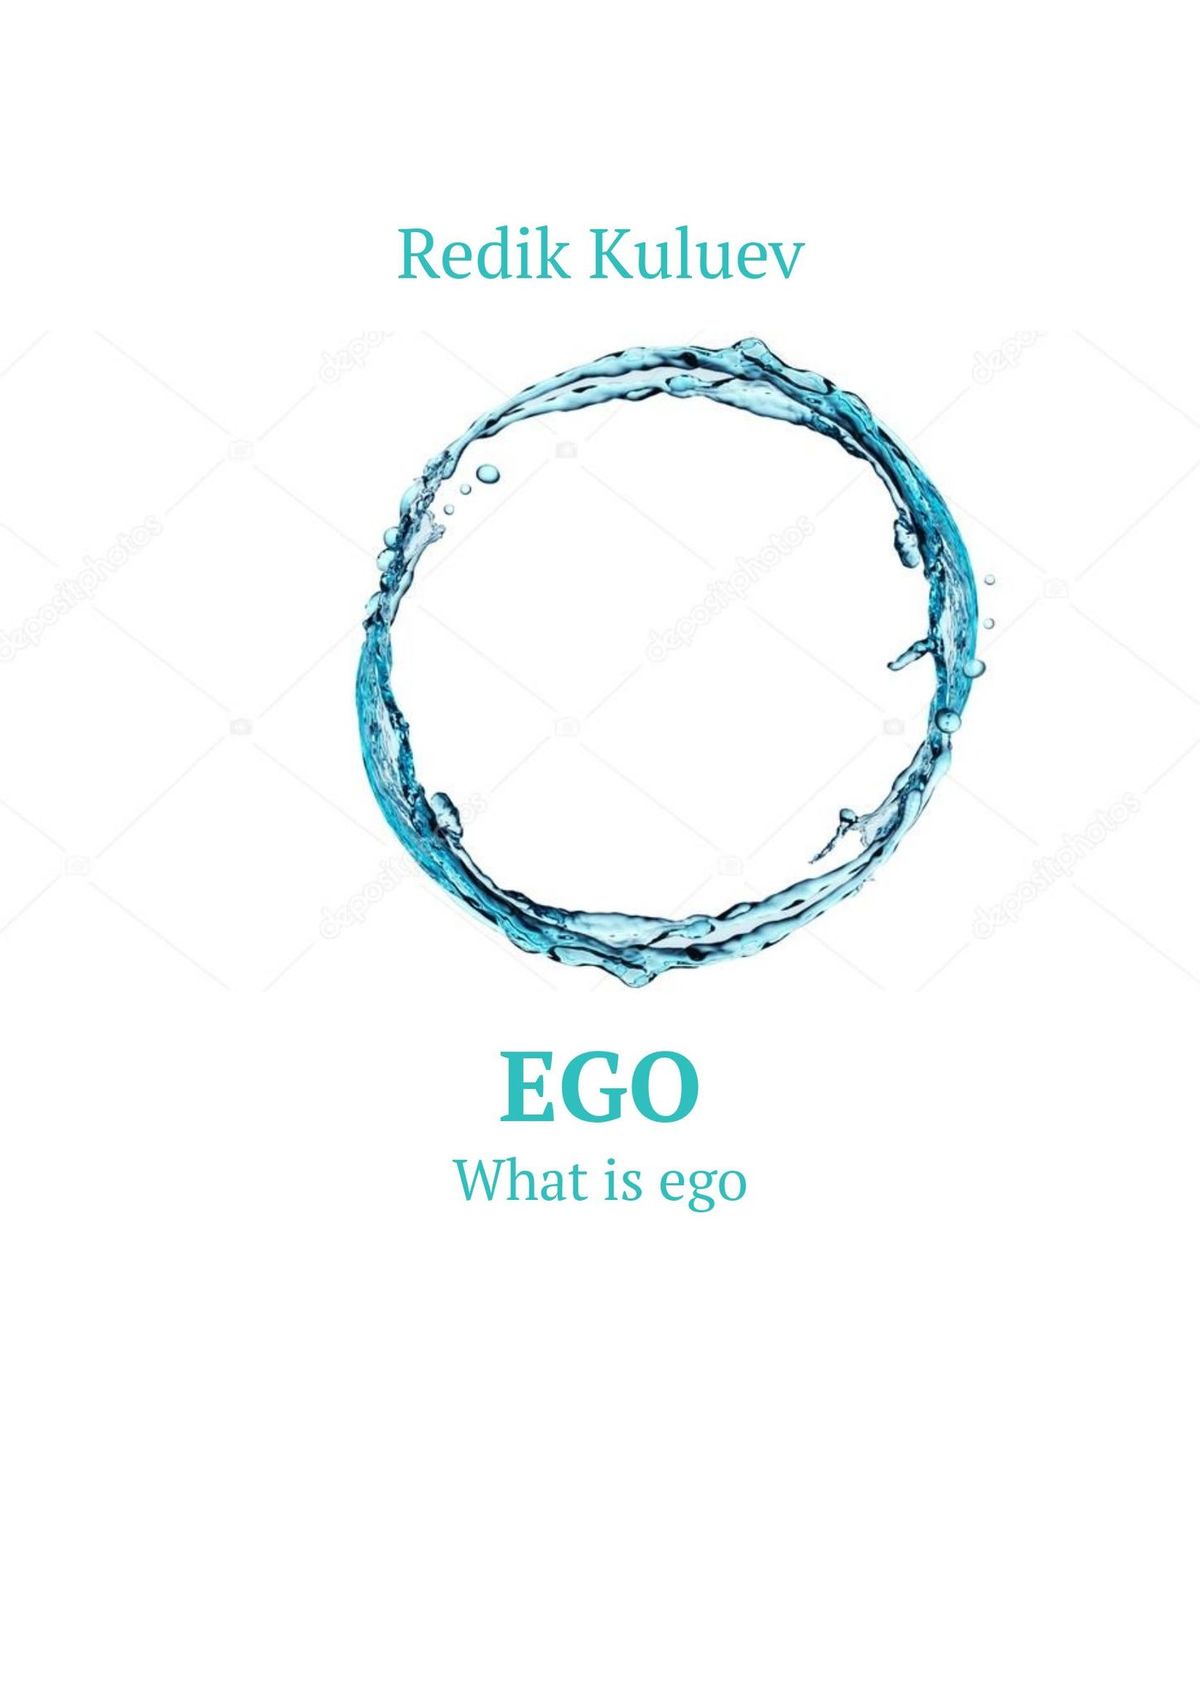 Книга Ego. What is ego из серии , созданная Sveg Norveg, может относится к жанру Медицина, Прочая образовательная литература, Биология, Общая психология. Стоимость электронной книги Ego. What is ego с идентификатором 40523025 составляет 5.99 руб.